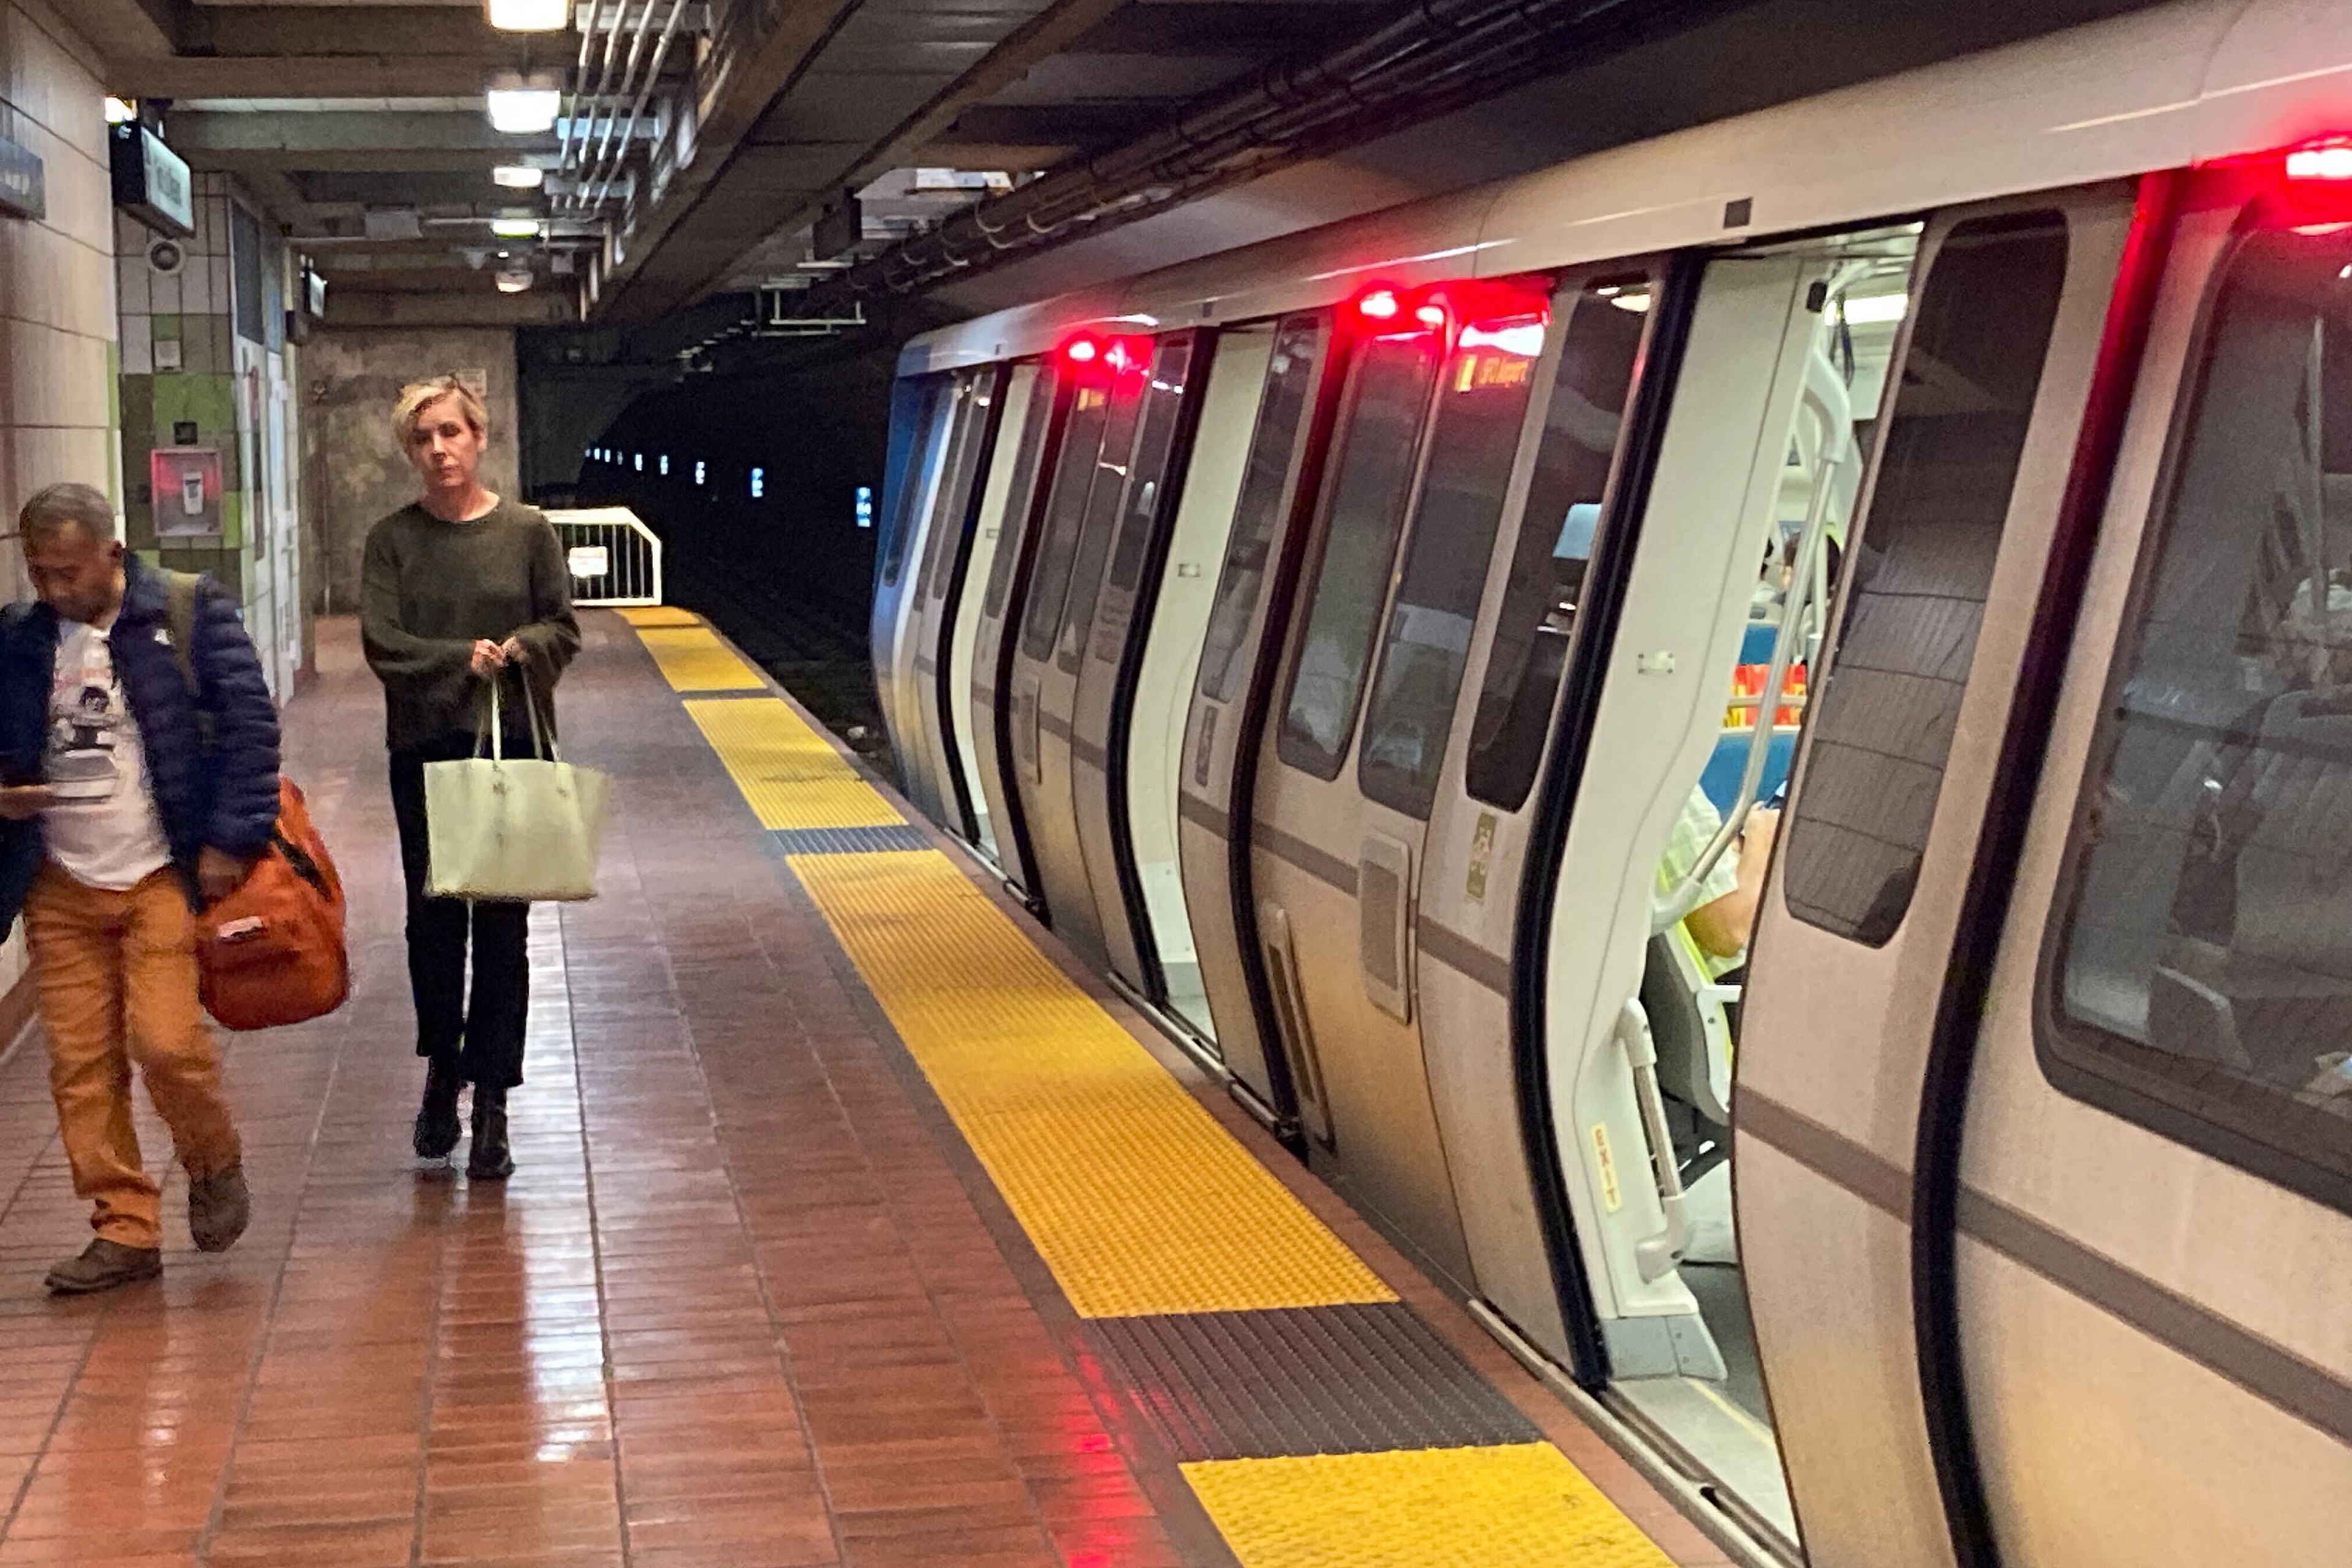 Passengers walk on a platform next to a train in an underground station.